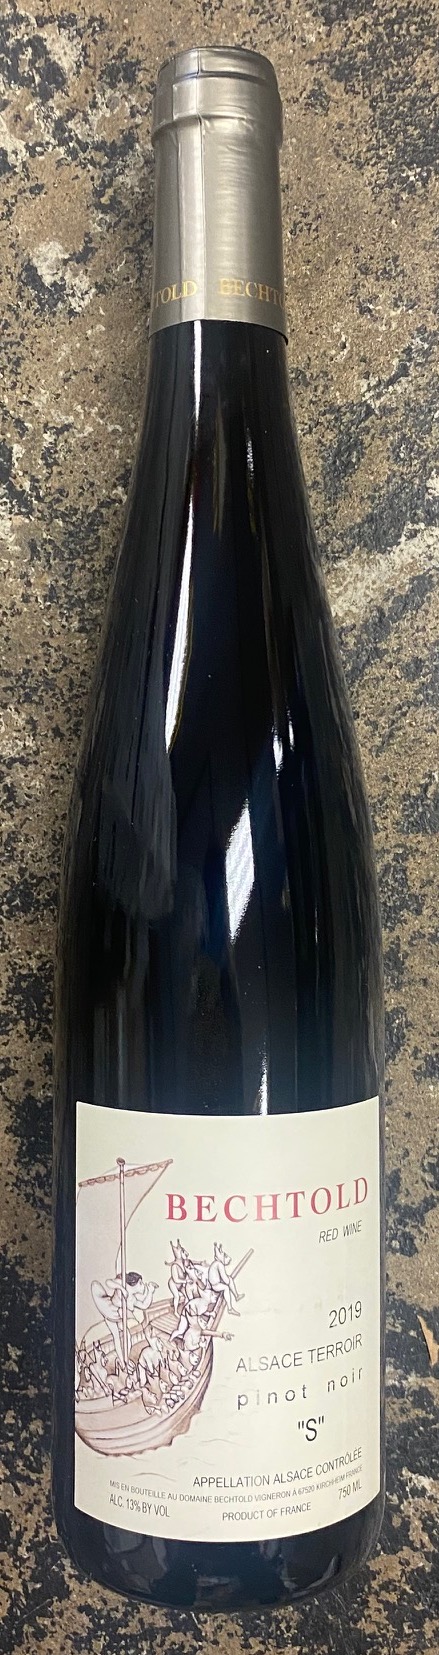 Bechtold - Pinot Noir Cuvee S 2019 (750)